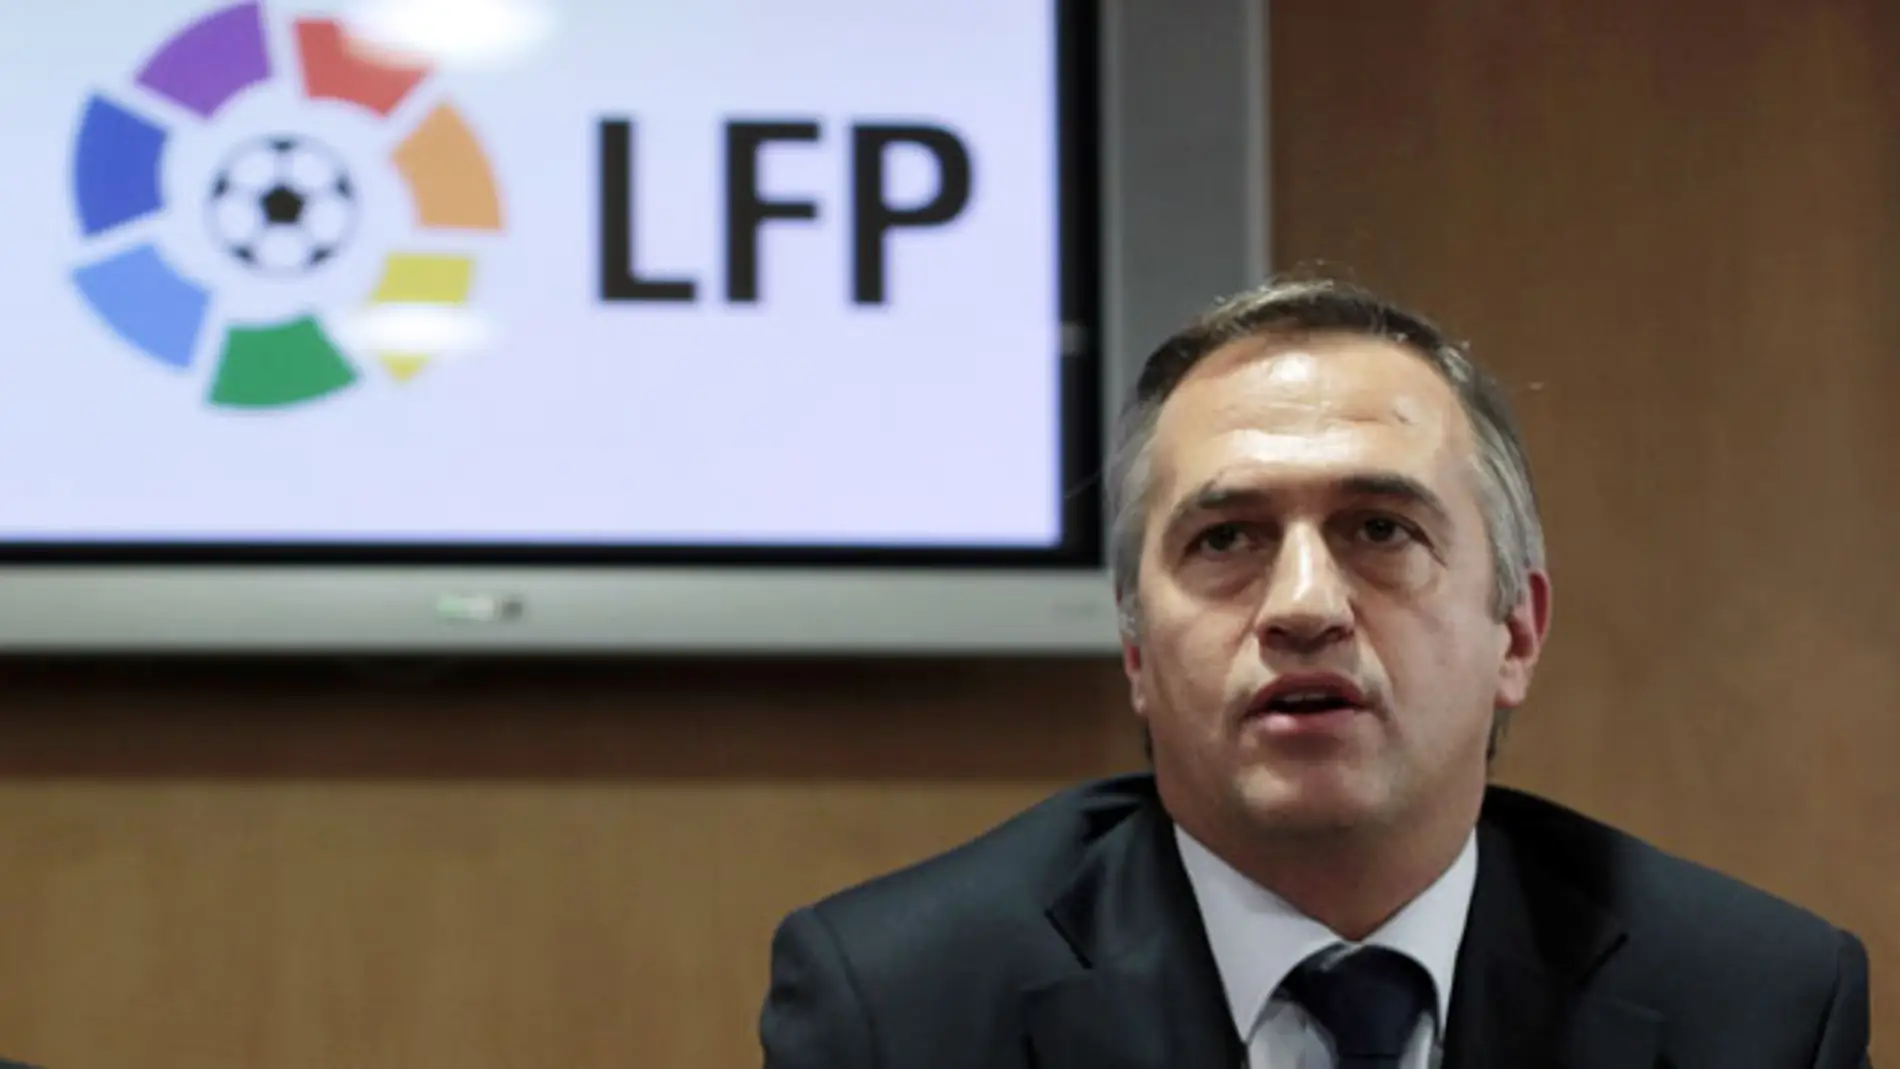 José Luis Astiazarán, presidente de la LFP